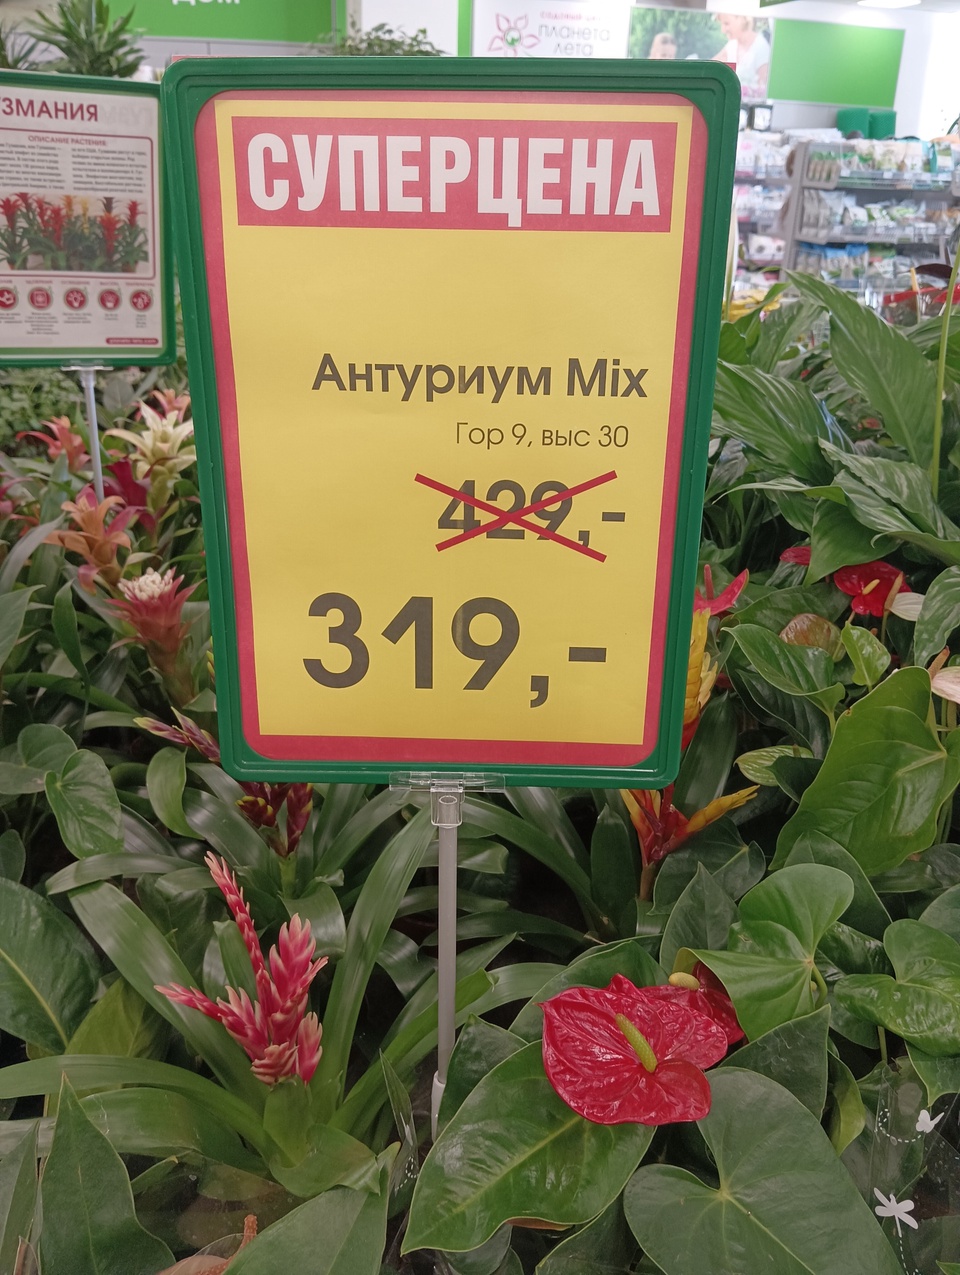 Антуриум mix - Садовый центр Планета Лета, Пятигорск